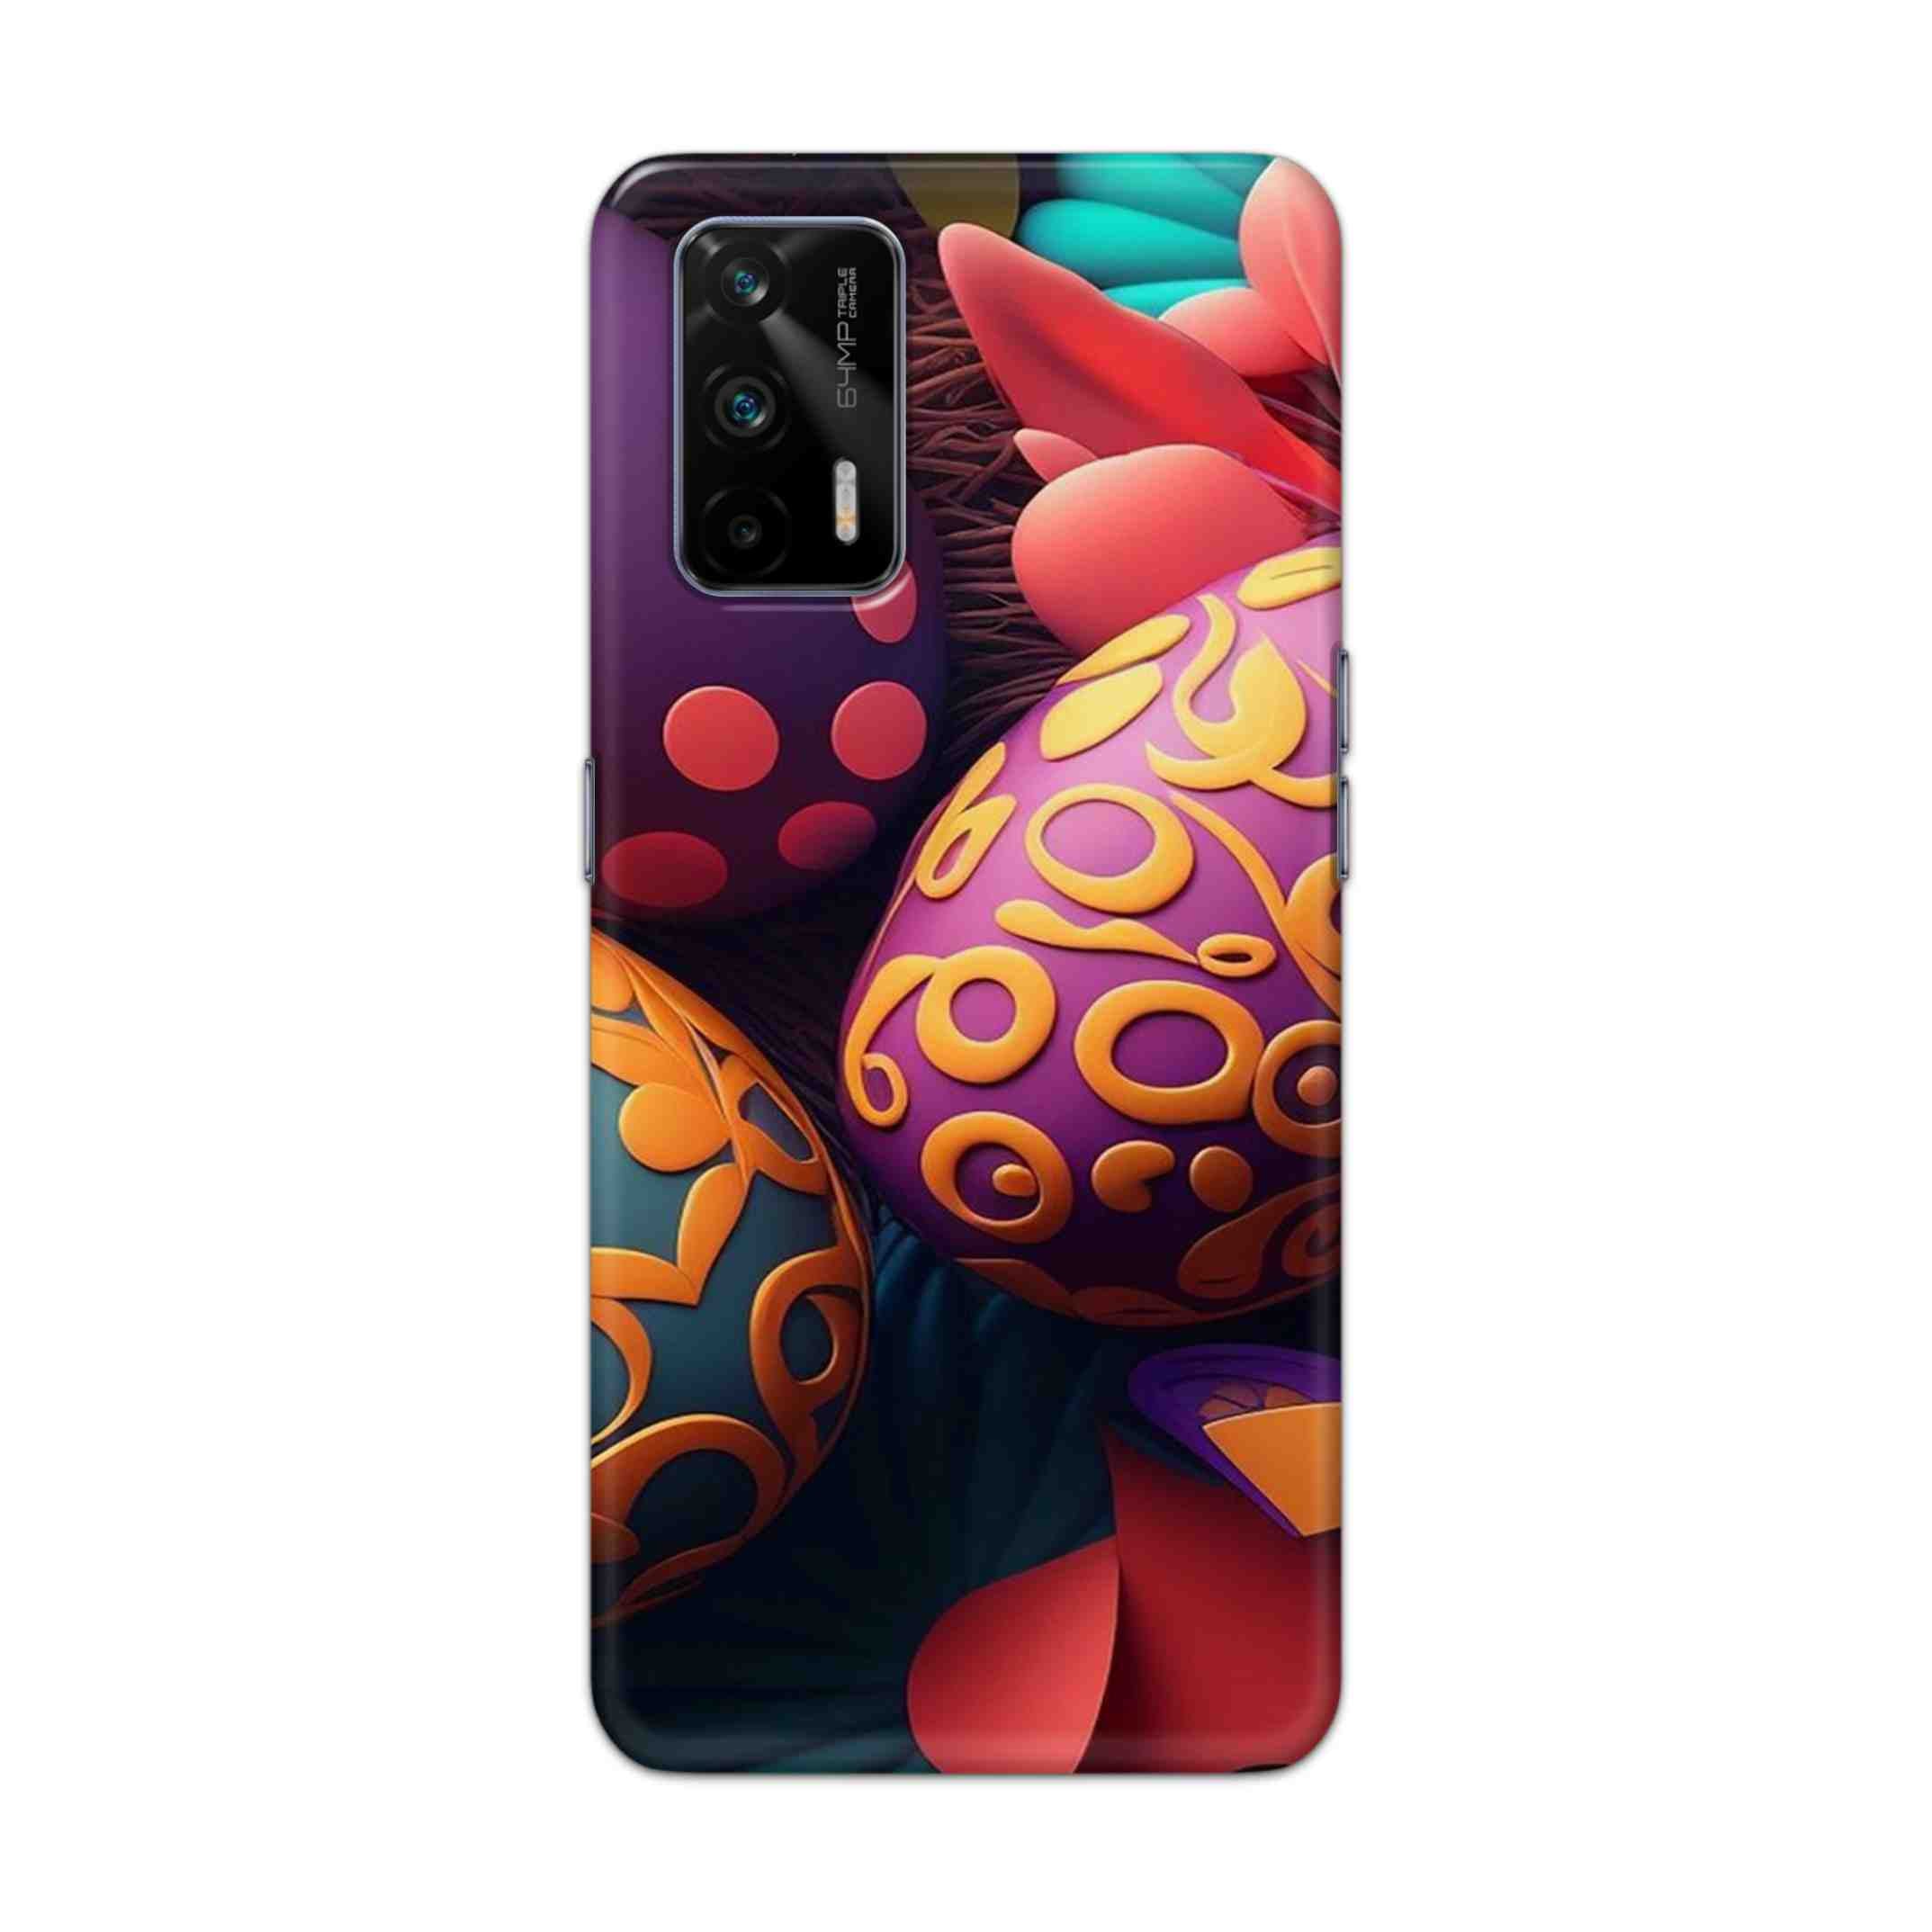 Buy Easter Egg Hard Back Mobile Phone Case Cover For Realme GT 5G Online